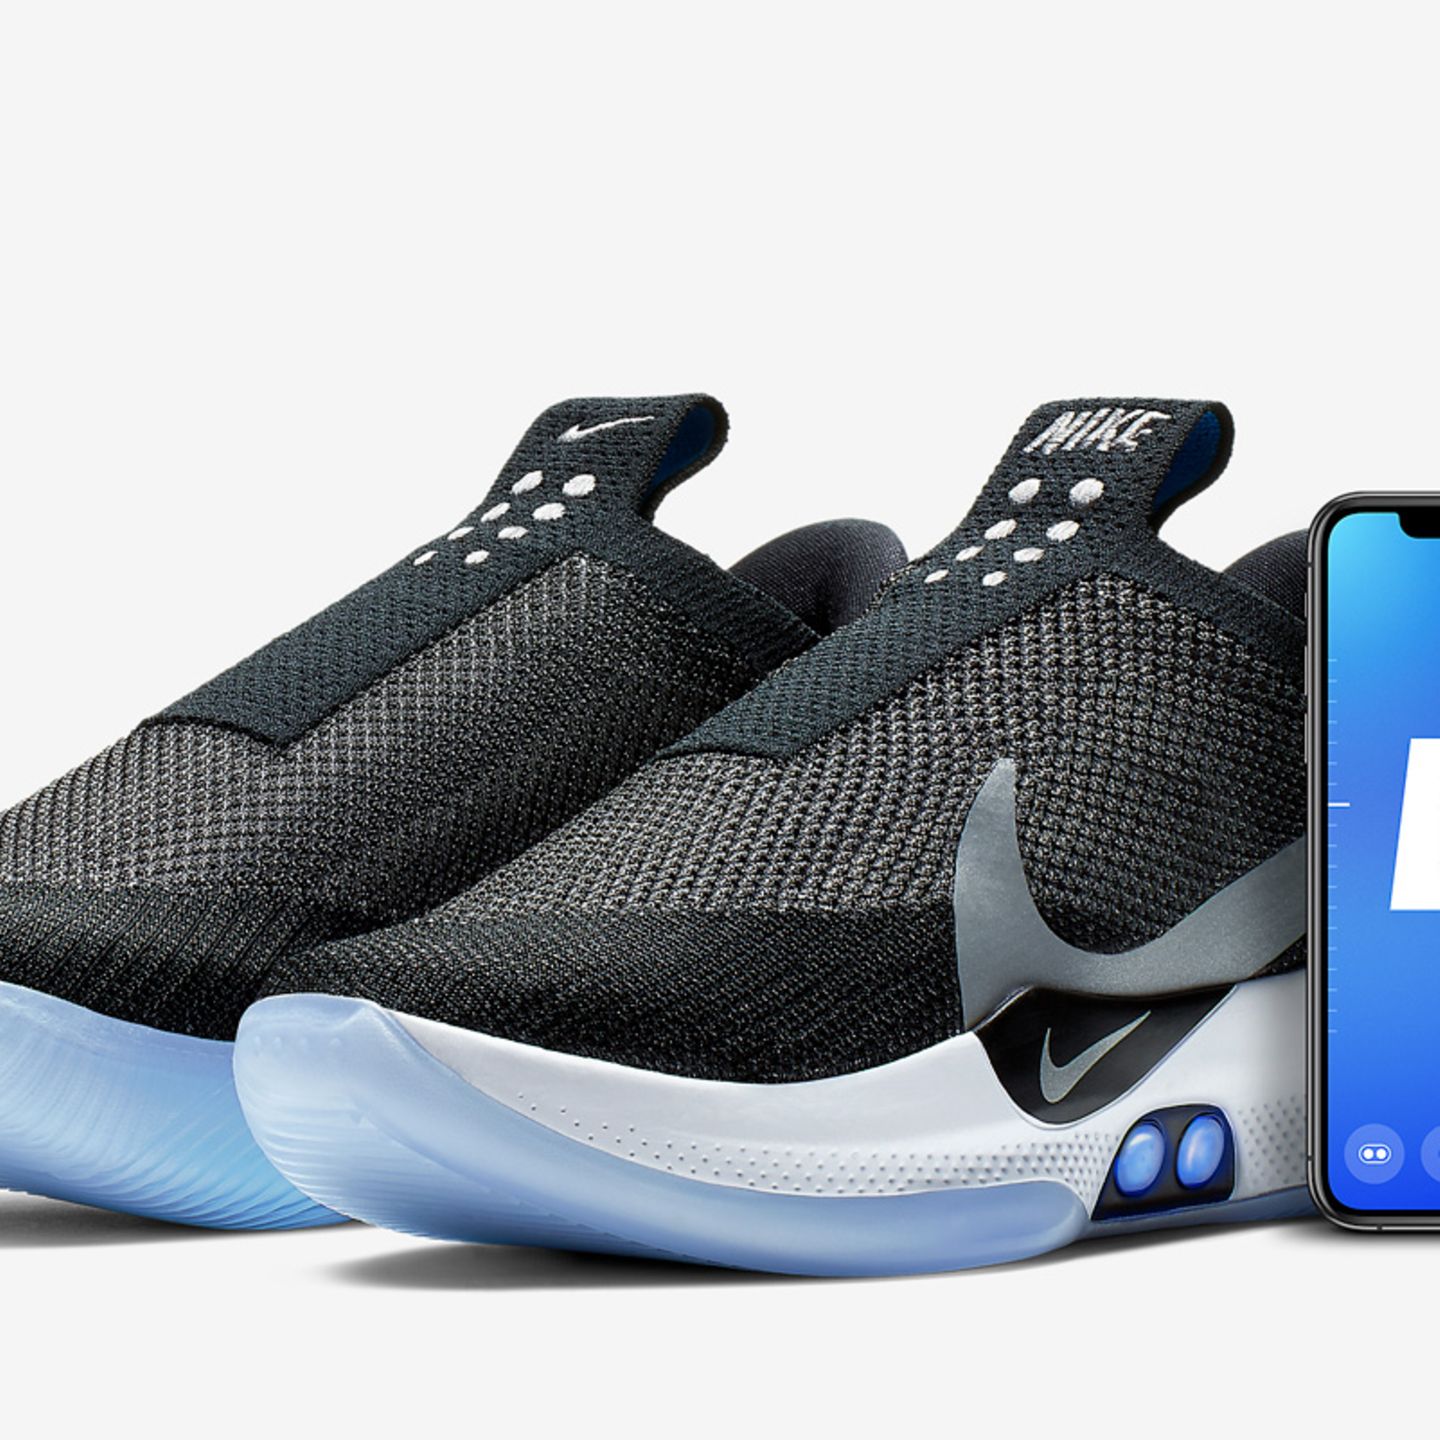 Nike Bringt Einen Schuh Auf Den Markt Den Man Per App Schnuren Kann Stern De